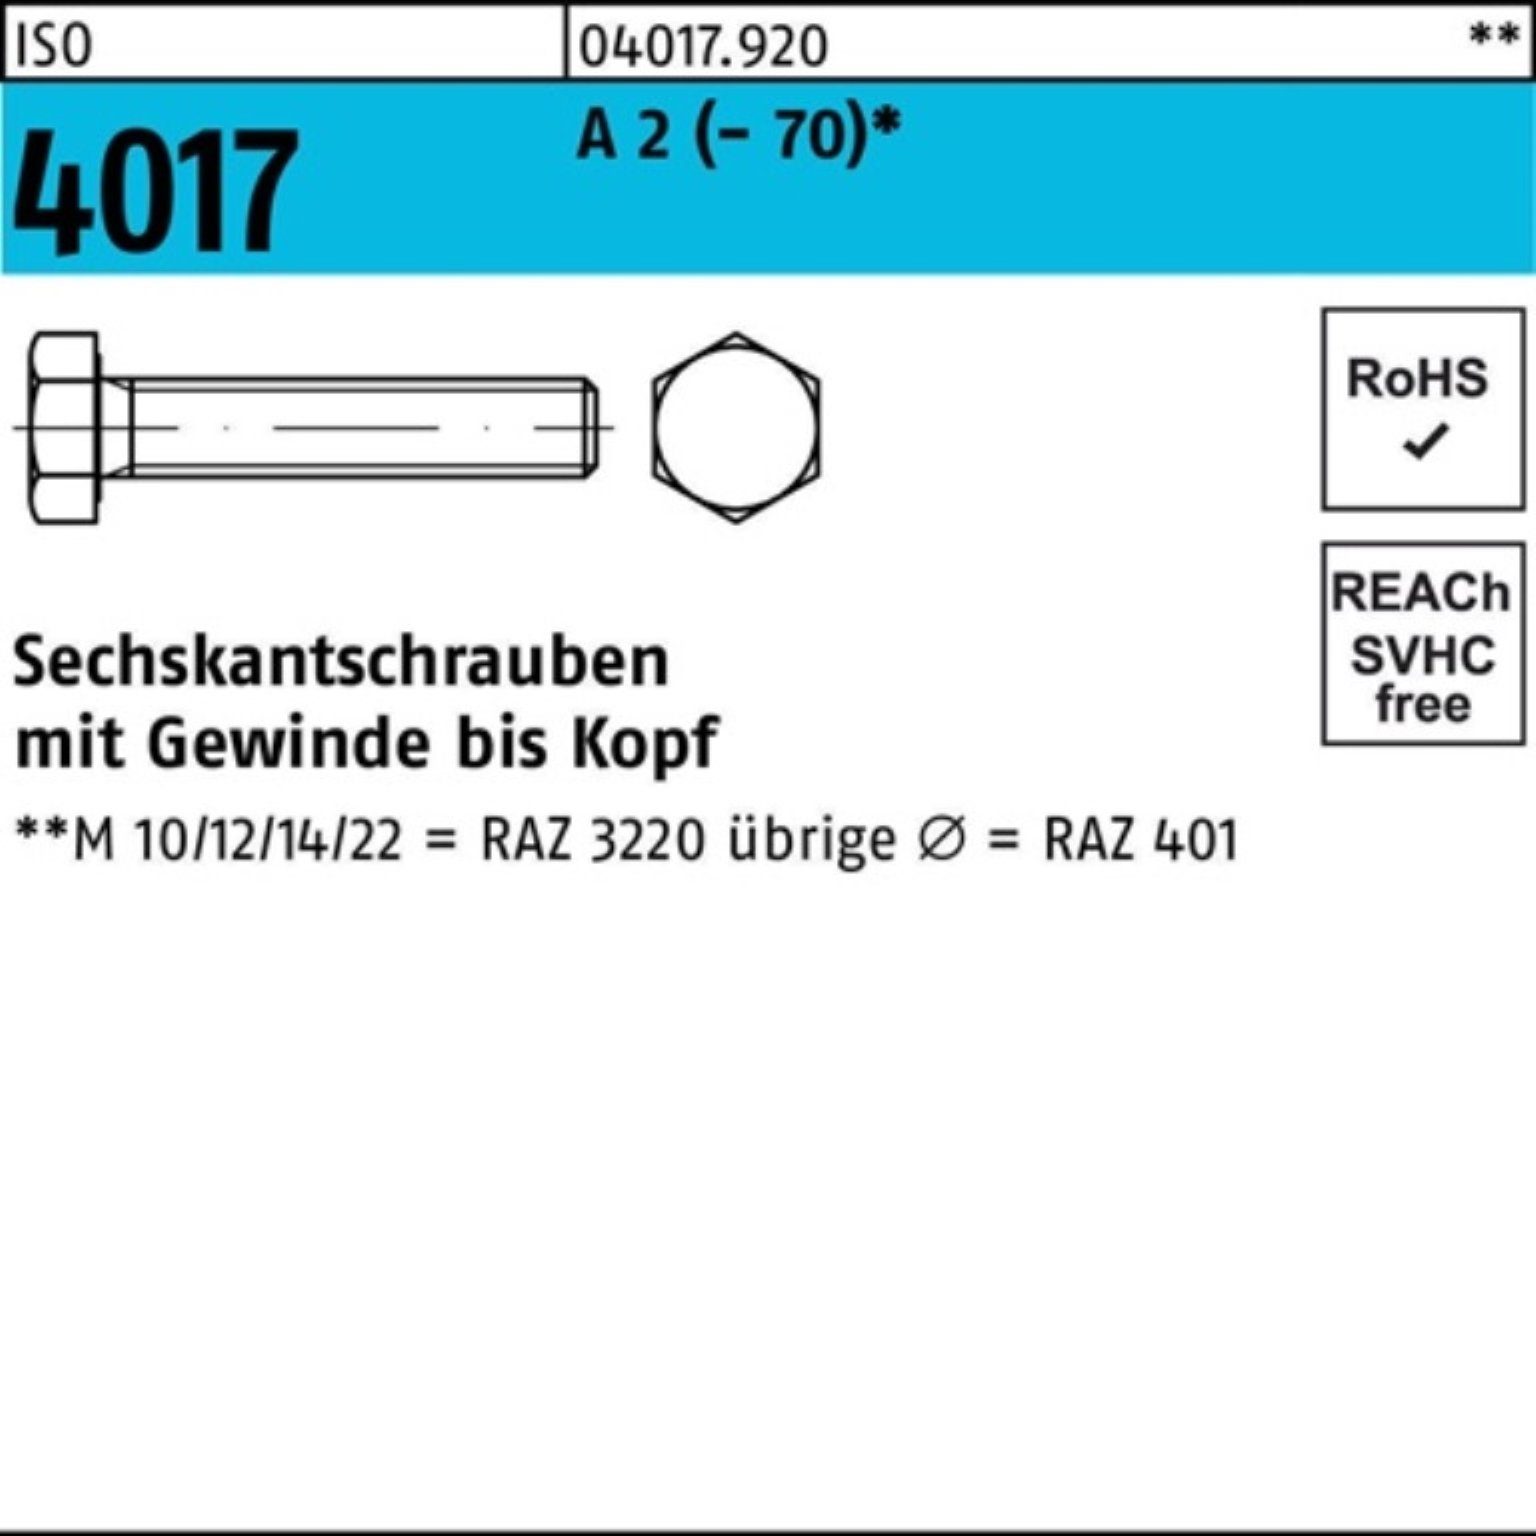 Bufab Sechskantschraube Pack 25 2 ISO Sechskantschraube M16x (70) 100 Stück 100er VG 4017 A